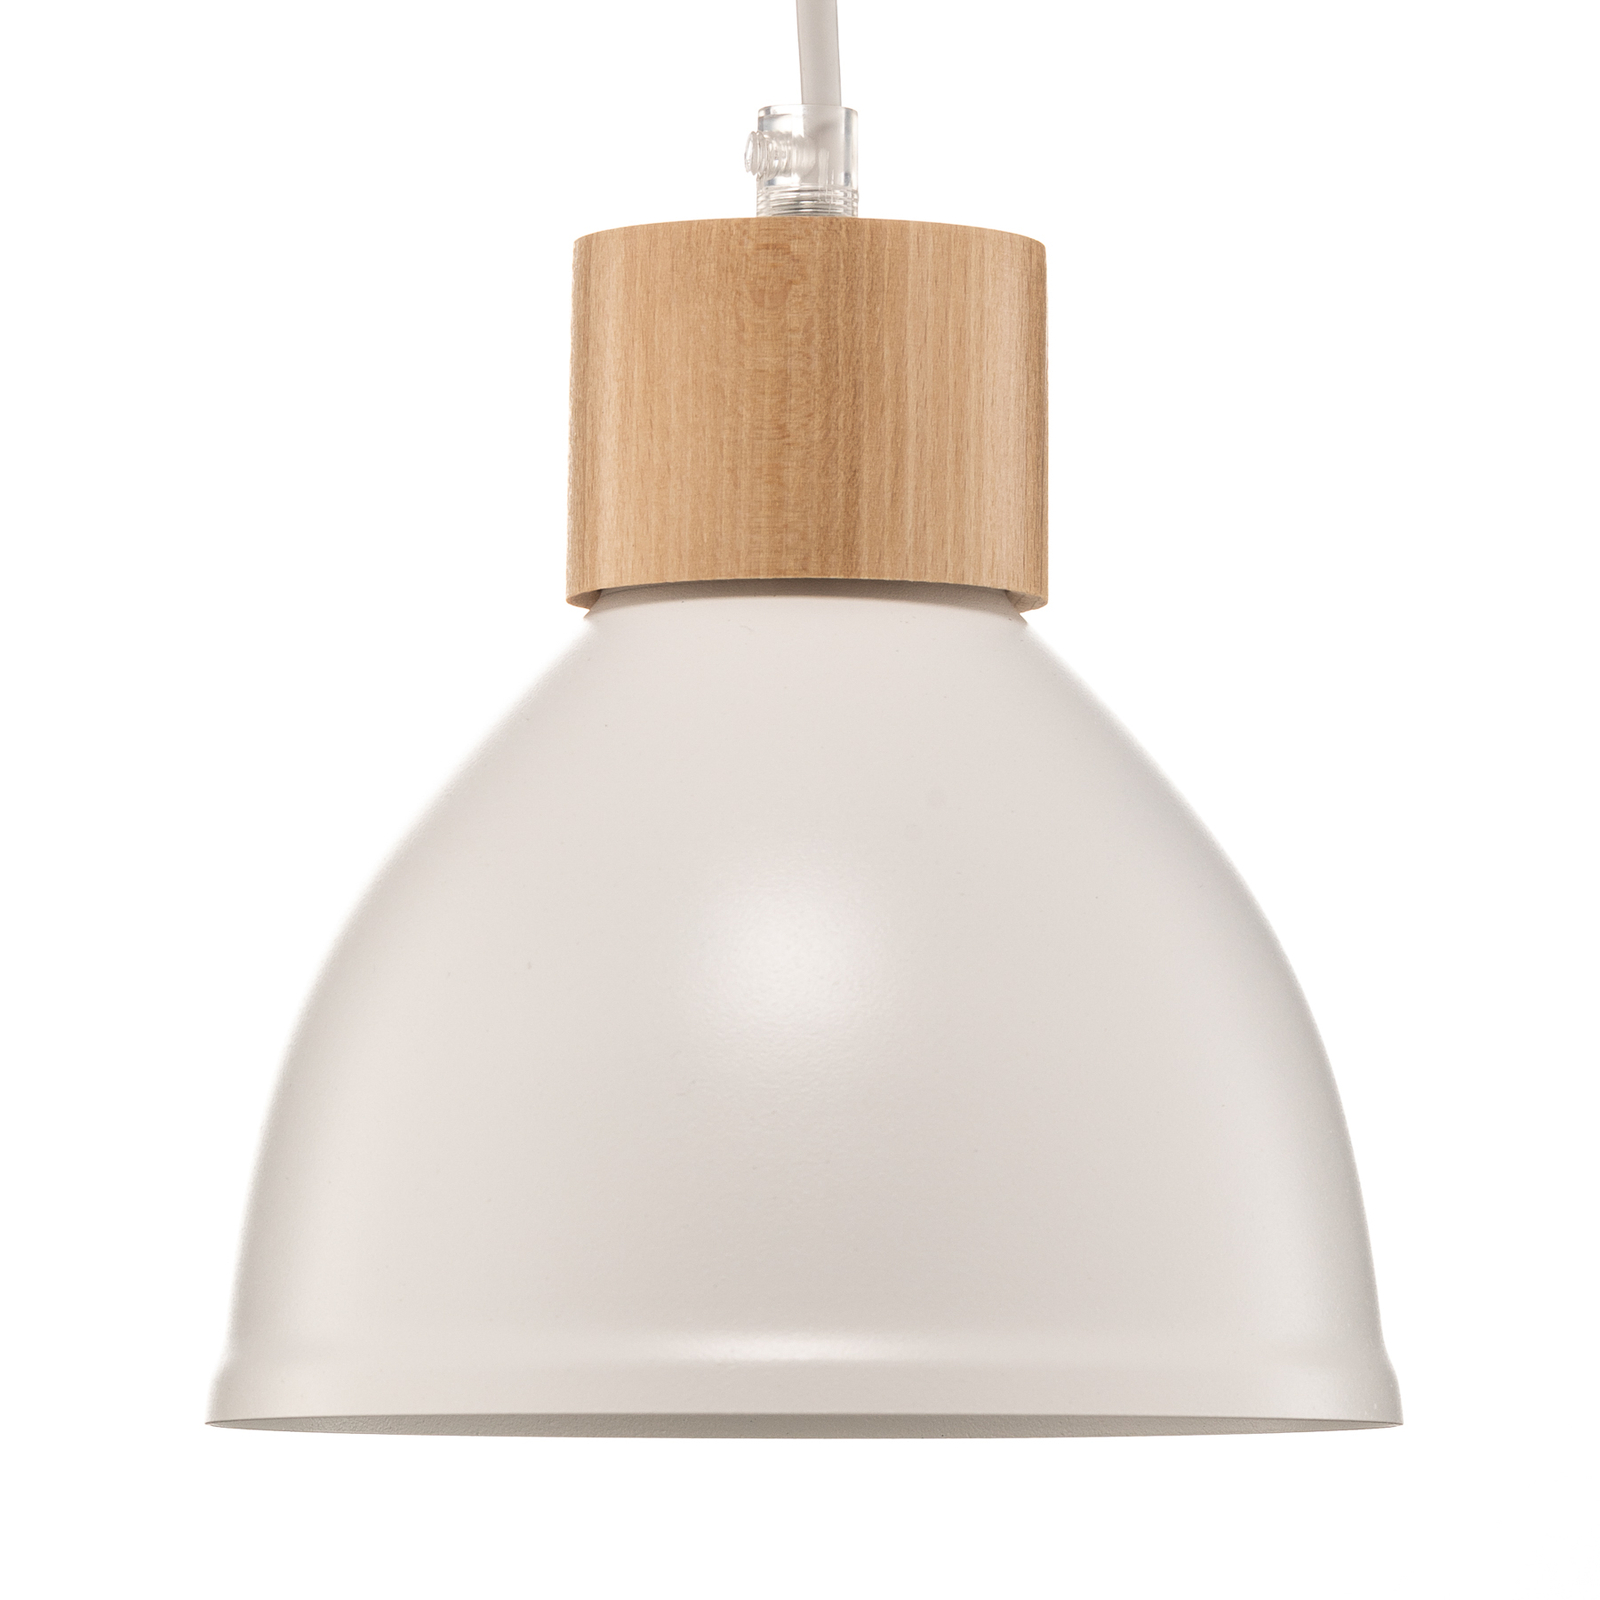 Envostar Tira pendant light, 1-bulb, white